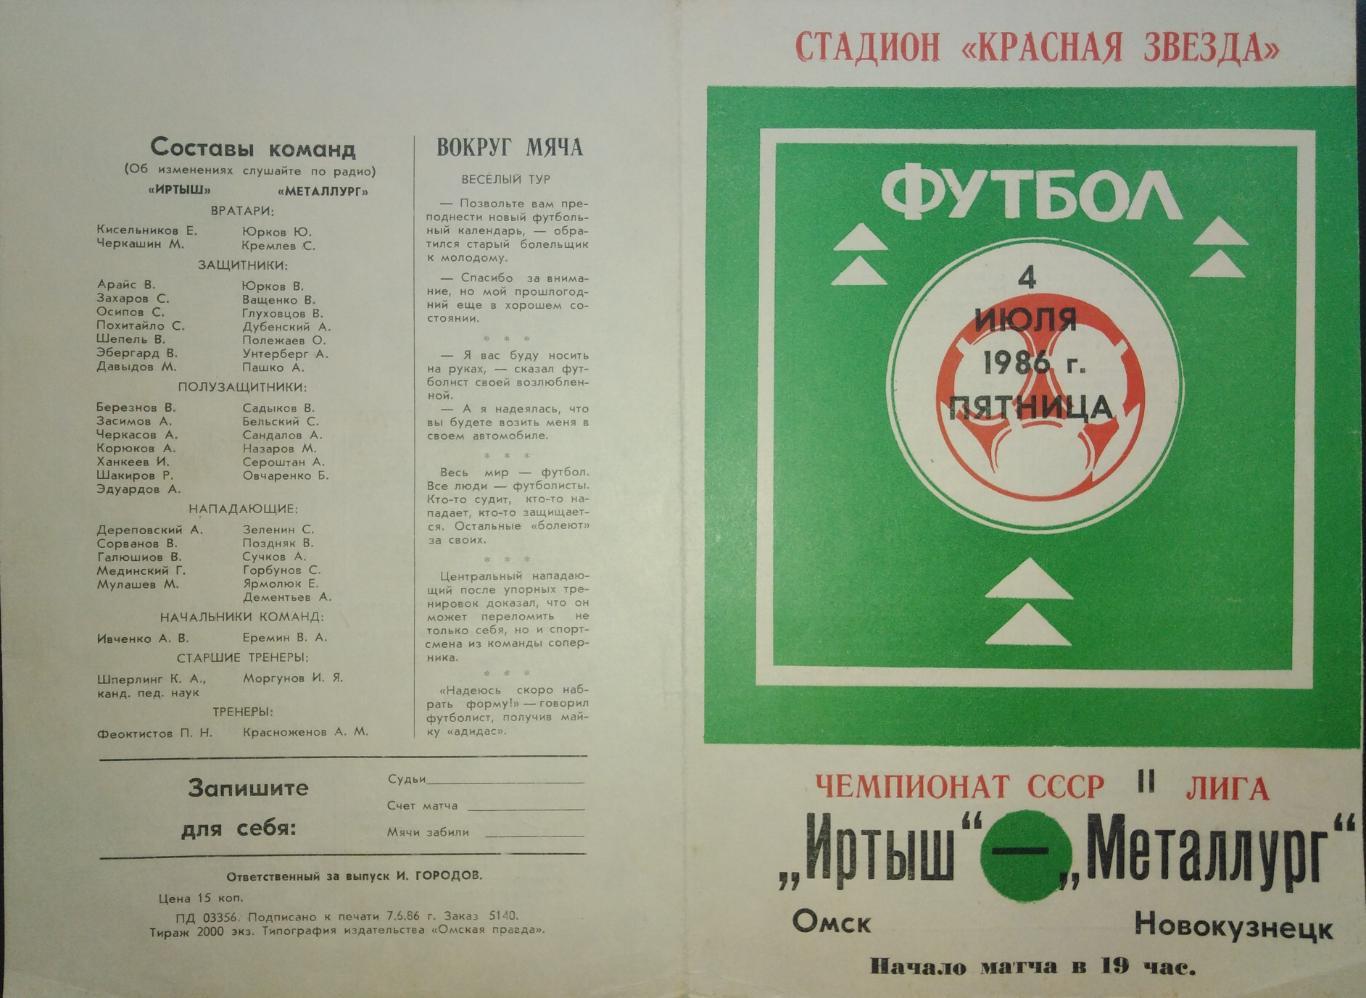 Иртыш Омск - Металлург Новокузнецк - 04.07.1986